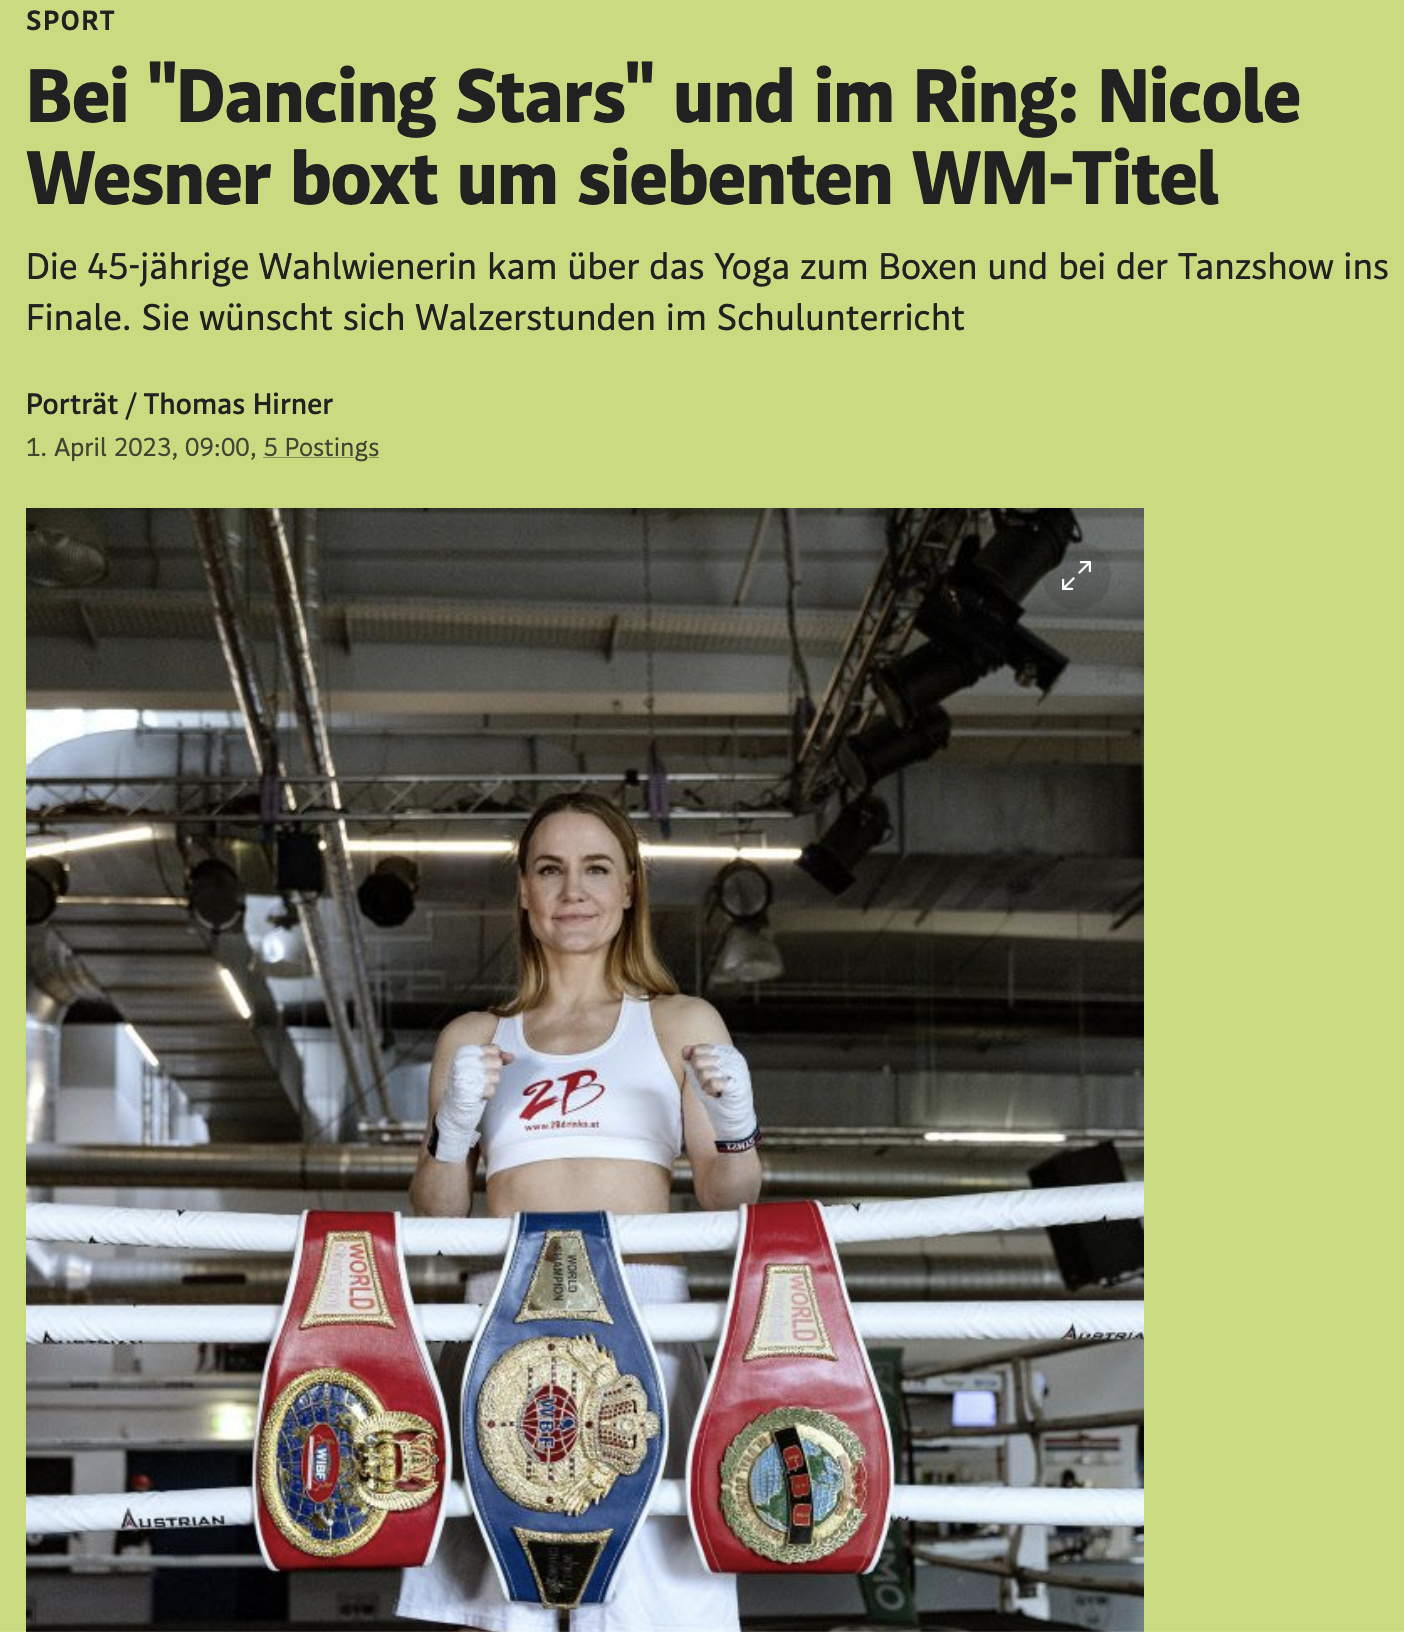 Standard: Bei "Dancing Stars" und im Ring: Nicole Wesner boxt um siebenten WM-Titel